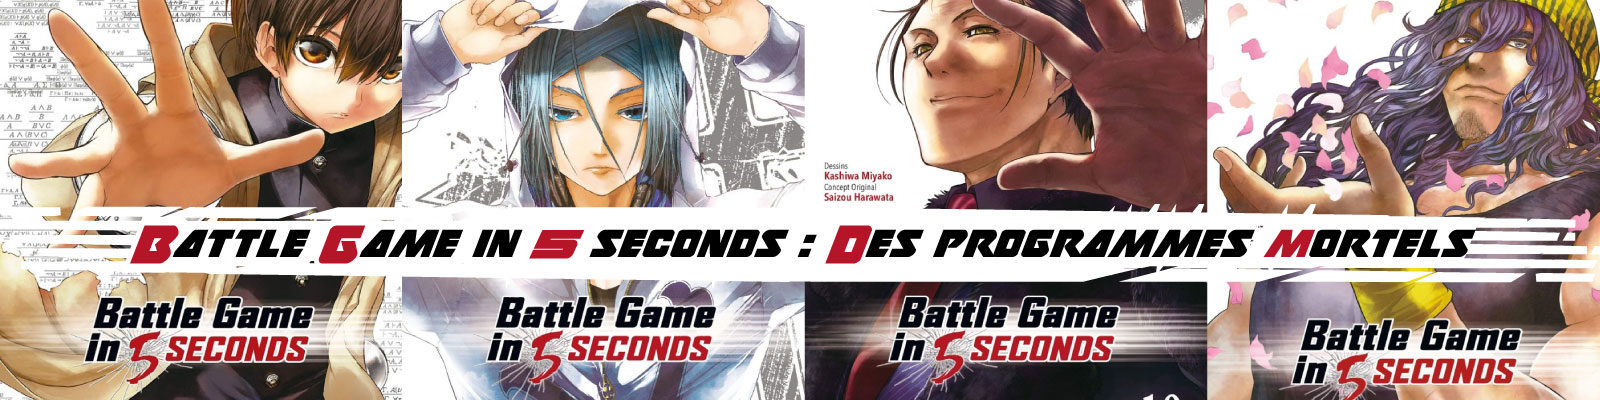 Battle Game in 5 Seconds---des-programmes-mortels